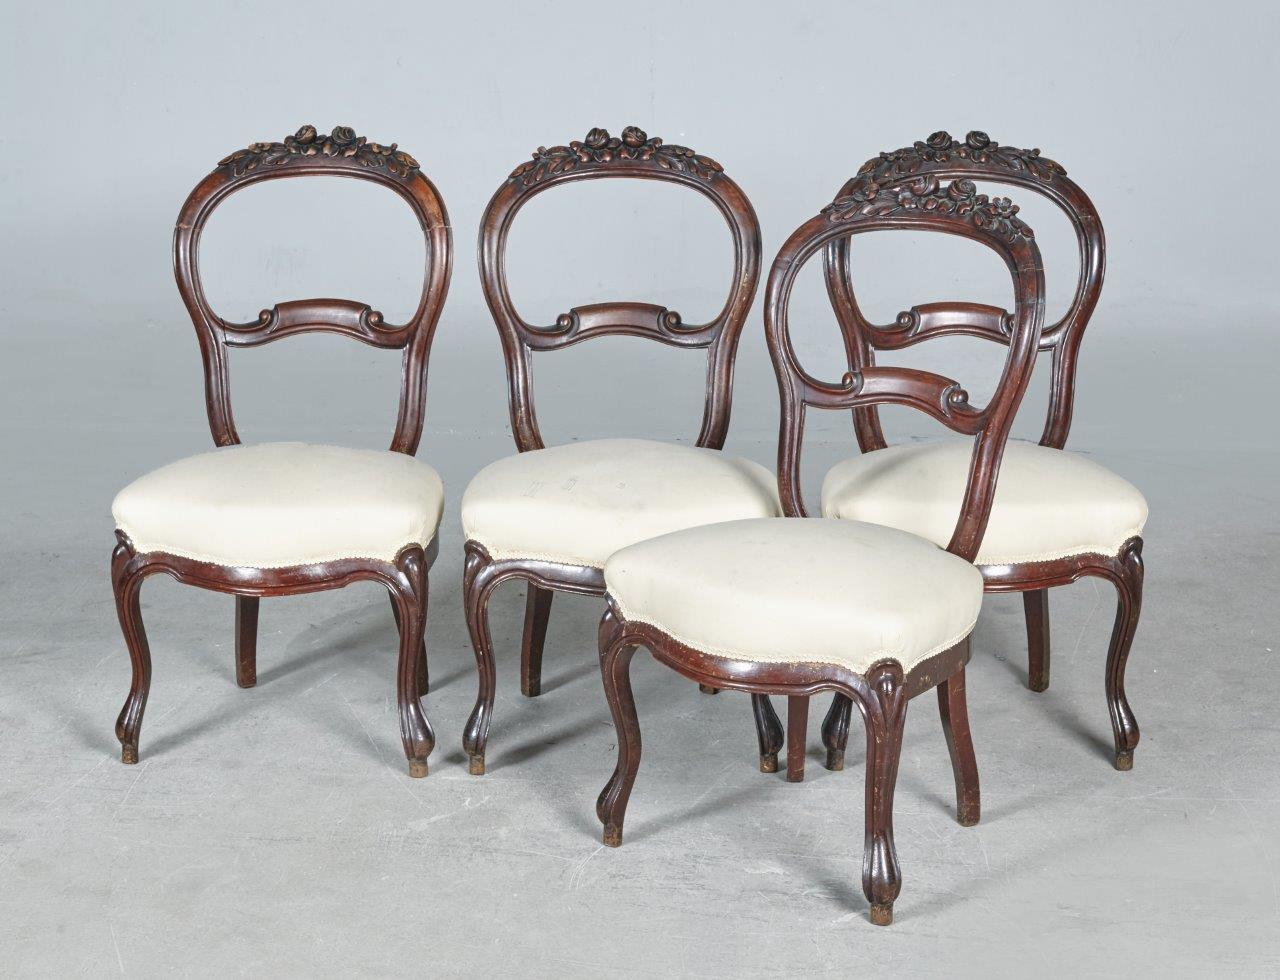 Cuatro sillas isabelinas en madera de caoba, tallada y moldada. España, mediados s. XIX.